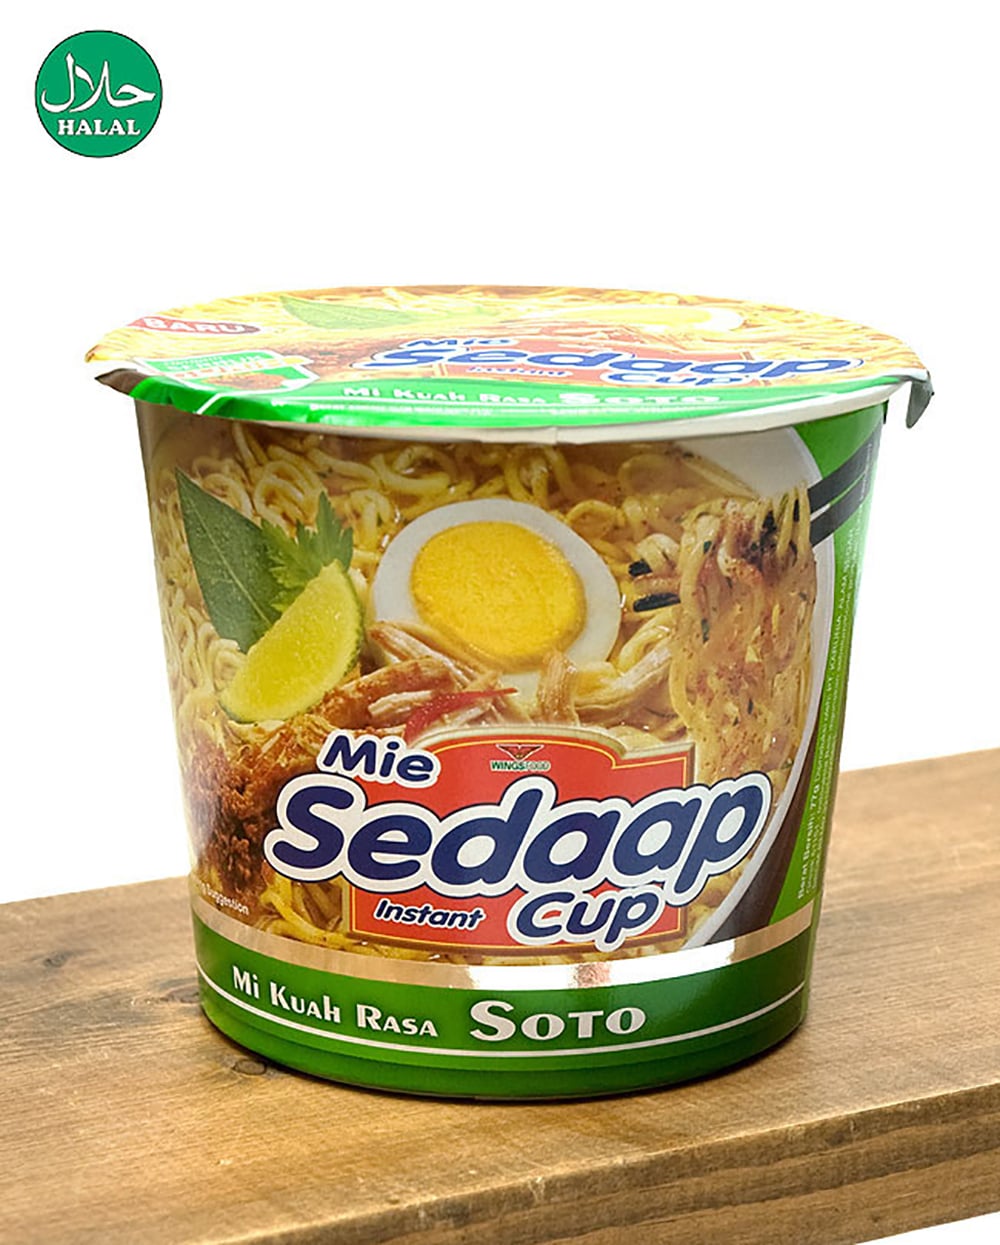 (ワケあり)インスタント カップ ヌードル ソトミー味 - SOTO Cup  【Mie Sedaap】 の写真1枚目です。野菜のやさしい味わいのインスタントヌードル
インドネシア料理,インドネシア,インスタント麺, 肉野菜味,ハラル,インドクオリティ